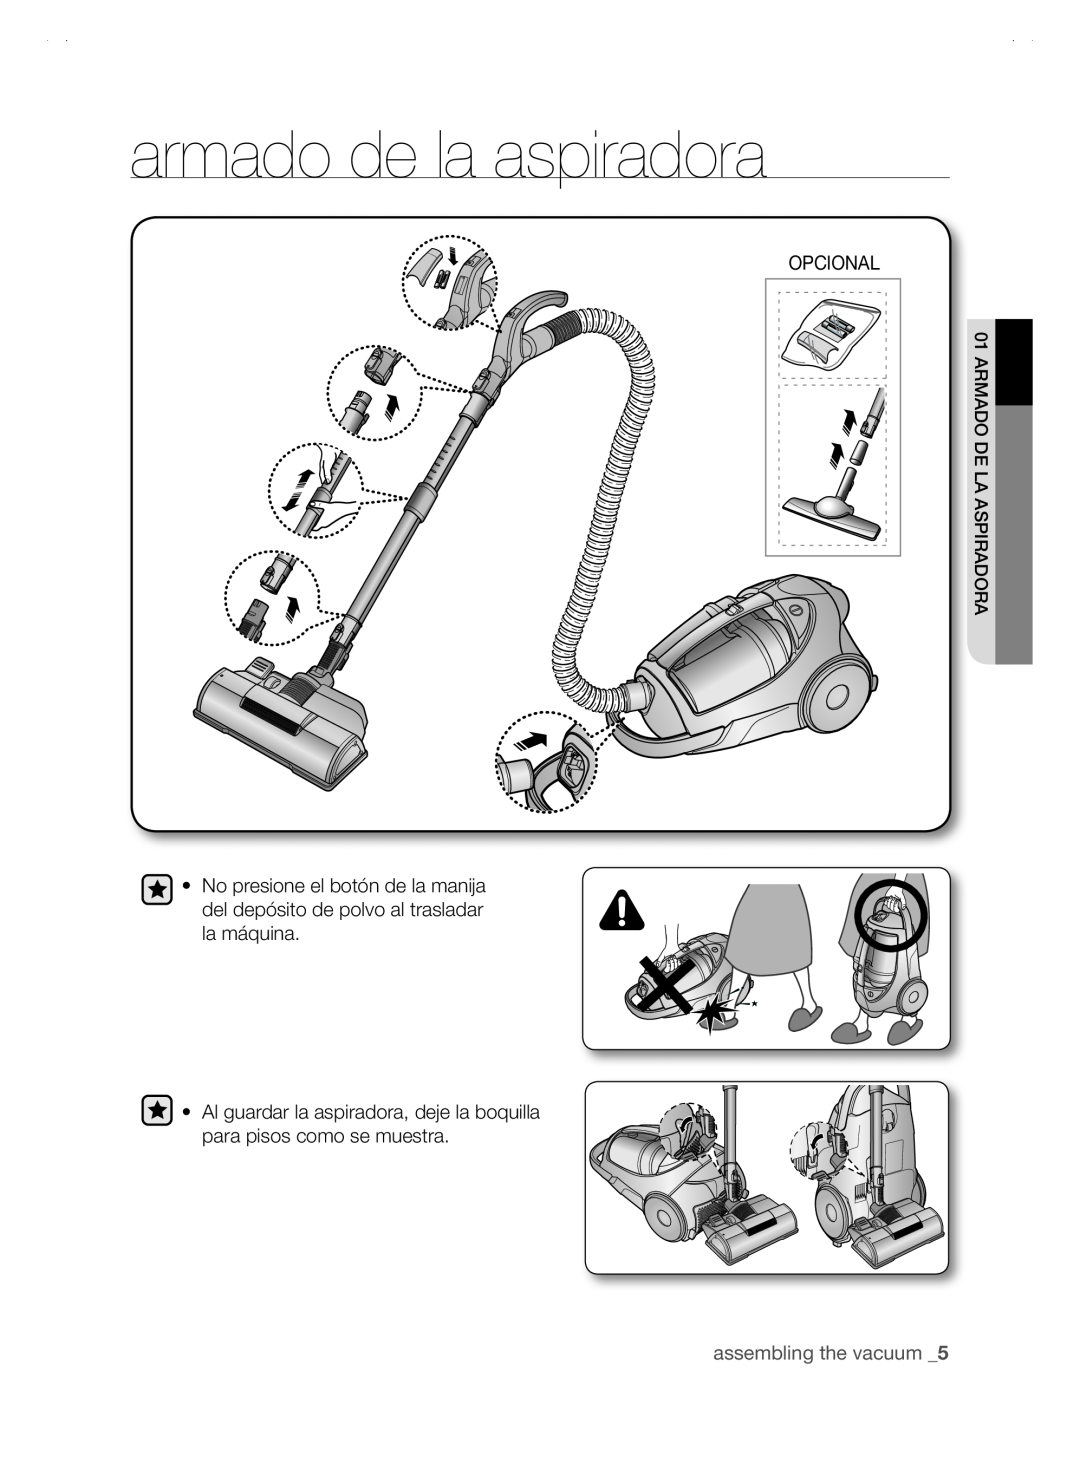 Samsung SC88P user manual armado de la aspiradora, Opcional, assembling the vacuum _5 